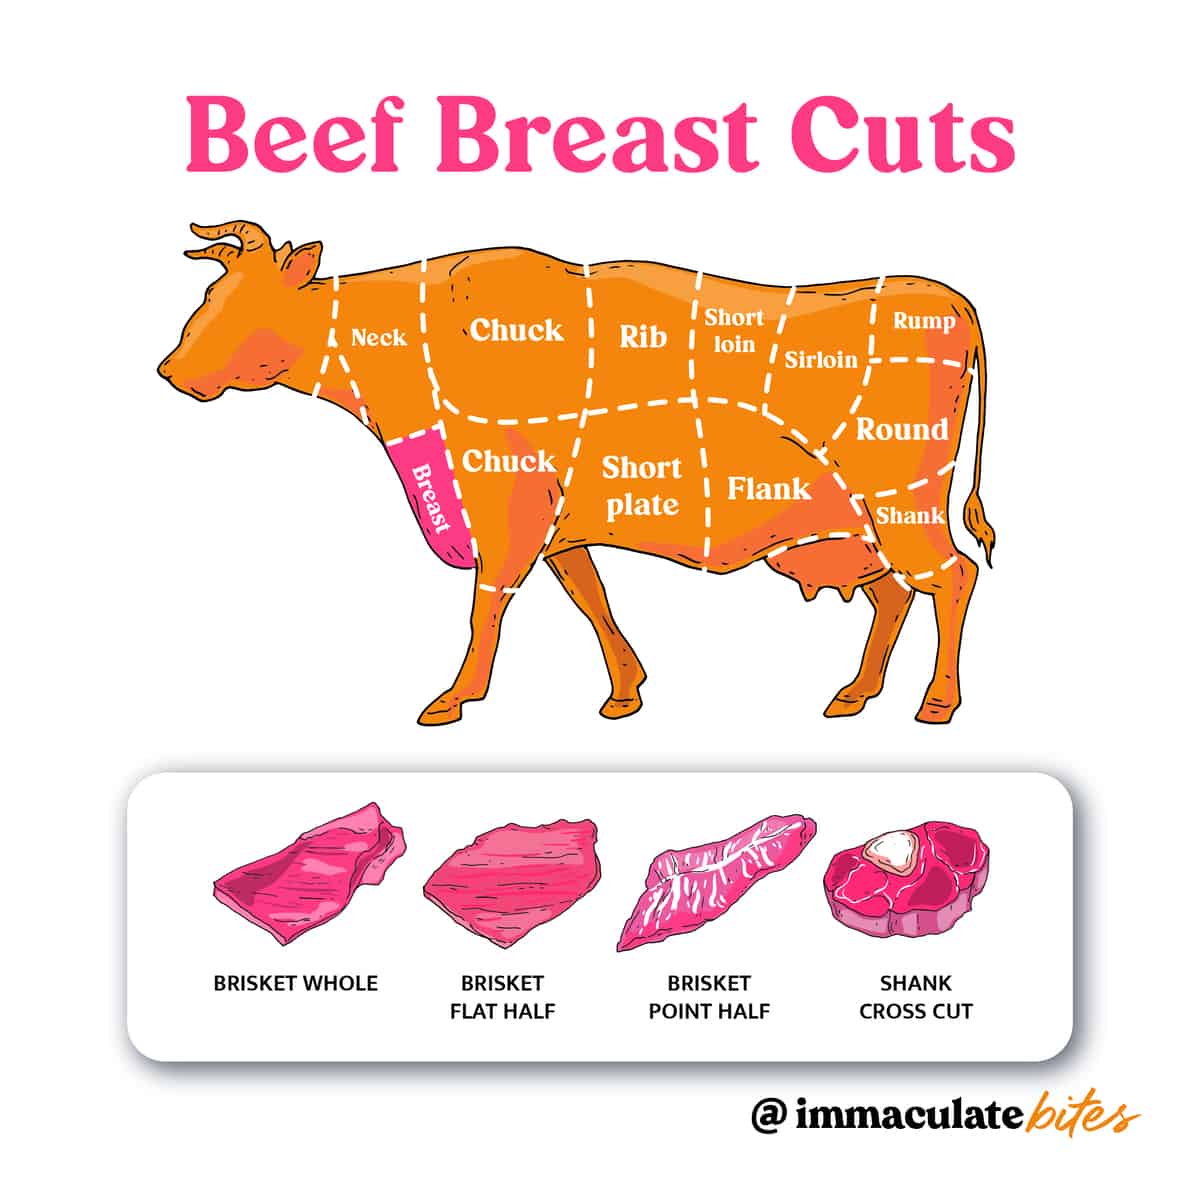 Beef Cuts - Breast